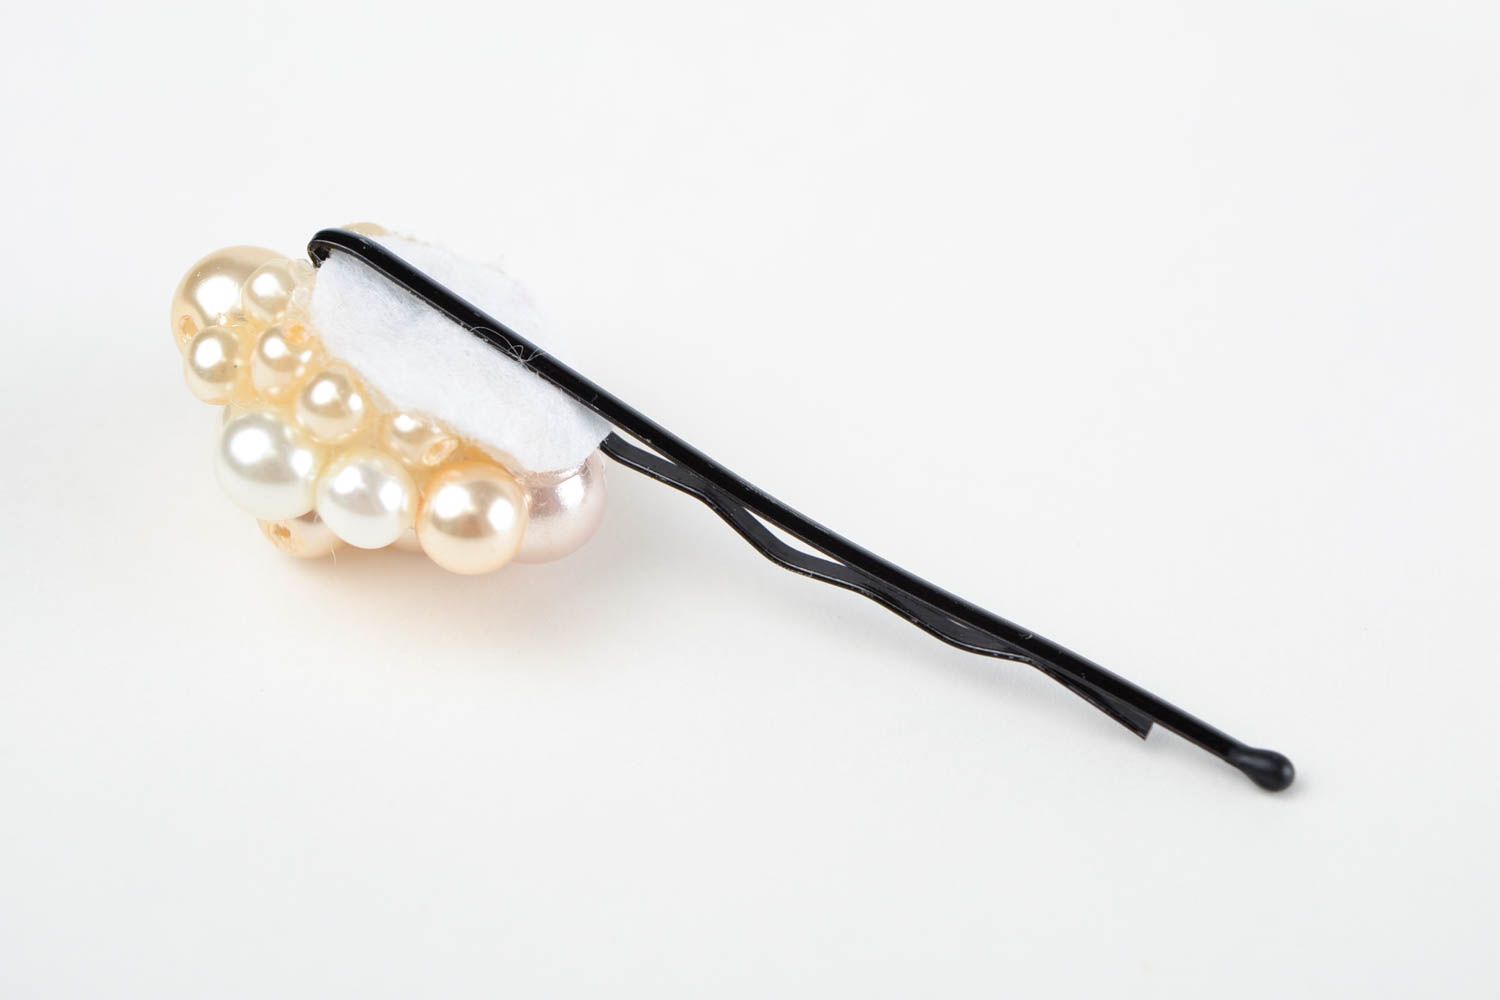 Handmade hair pin designer hair accessory gift ideas unusual hair pin for girls photo 5